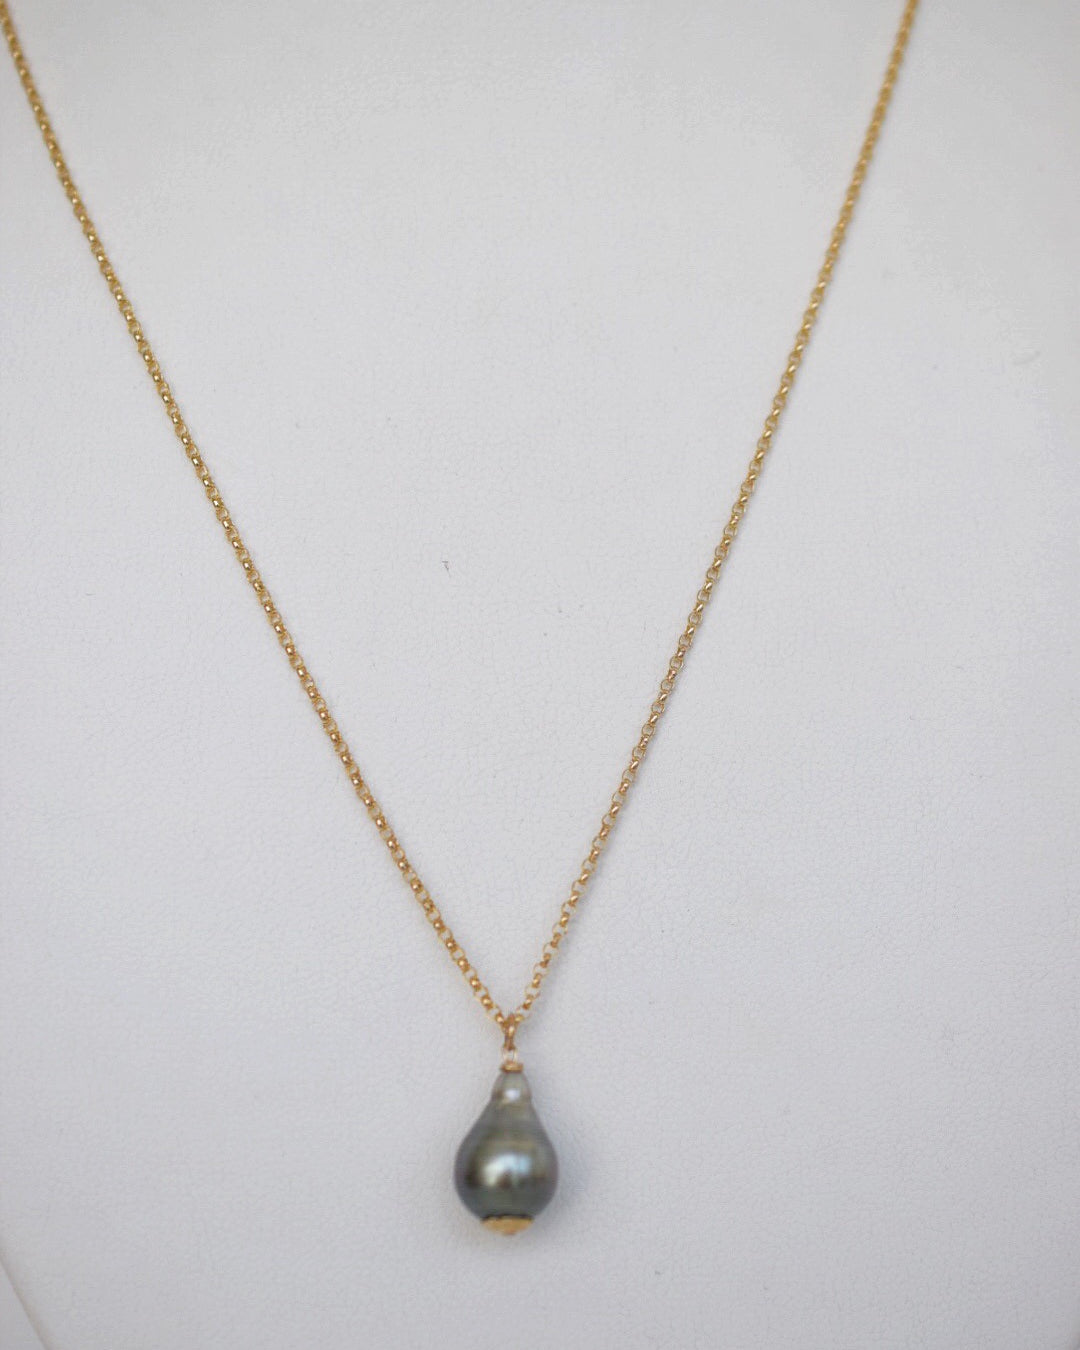 Tahitian Pearl ~ Simple 14k GF Chain Necklace - MILK VELVET PEARLS